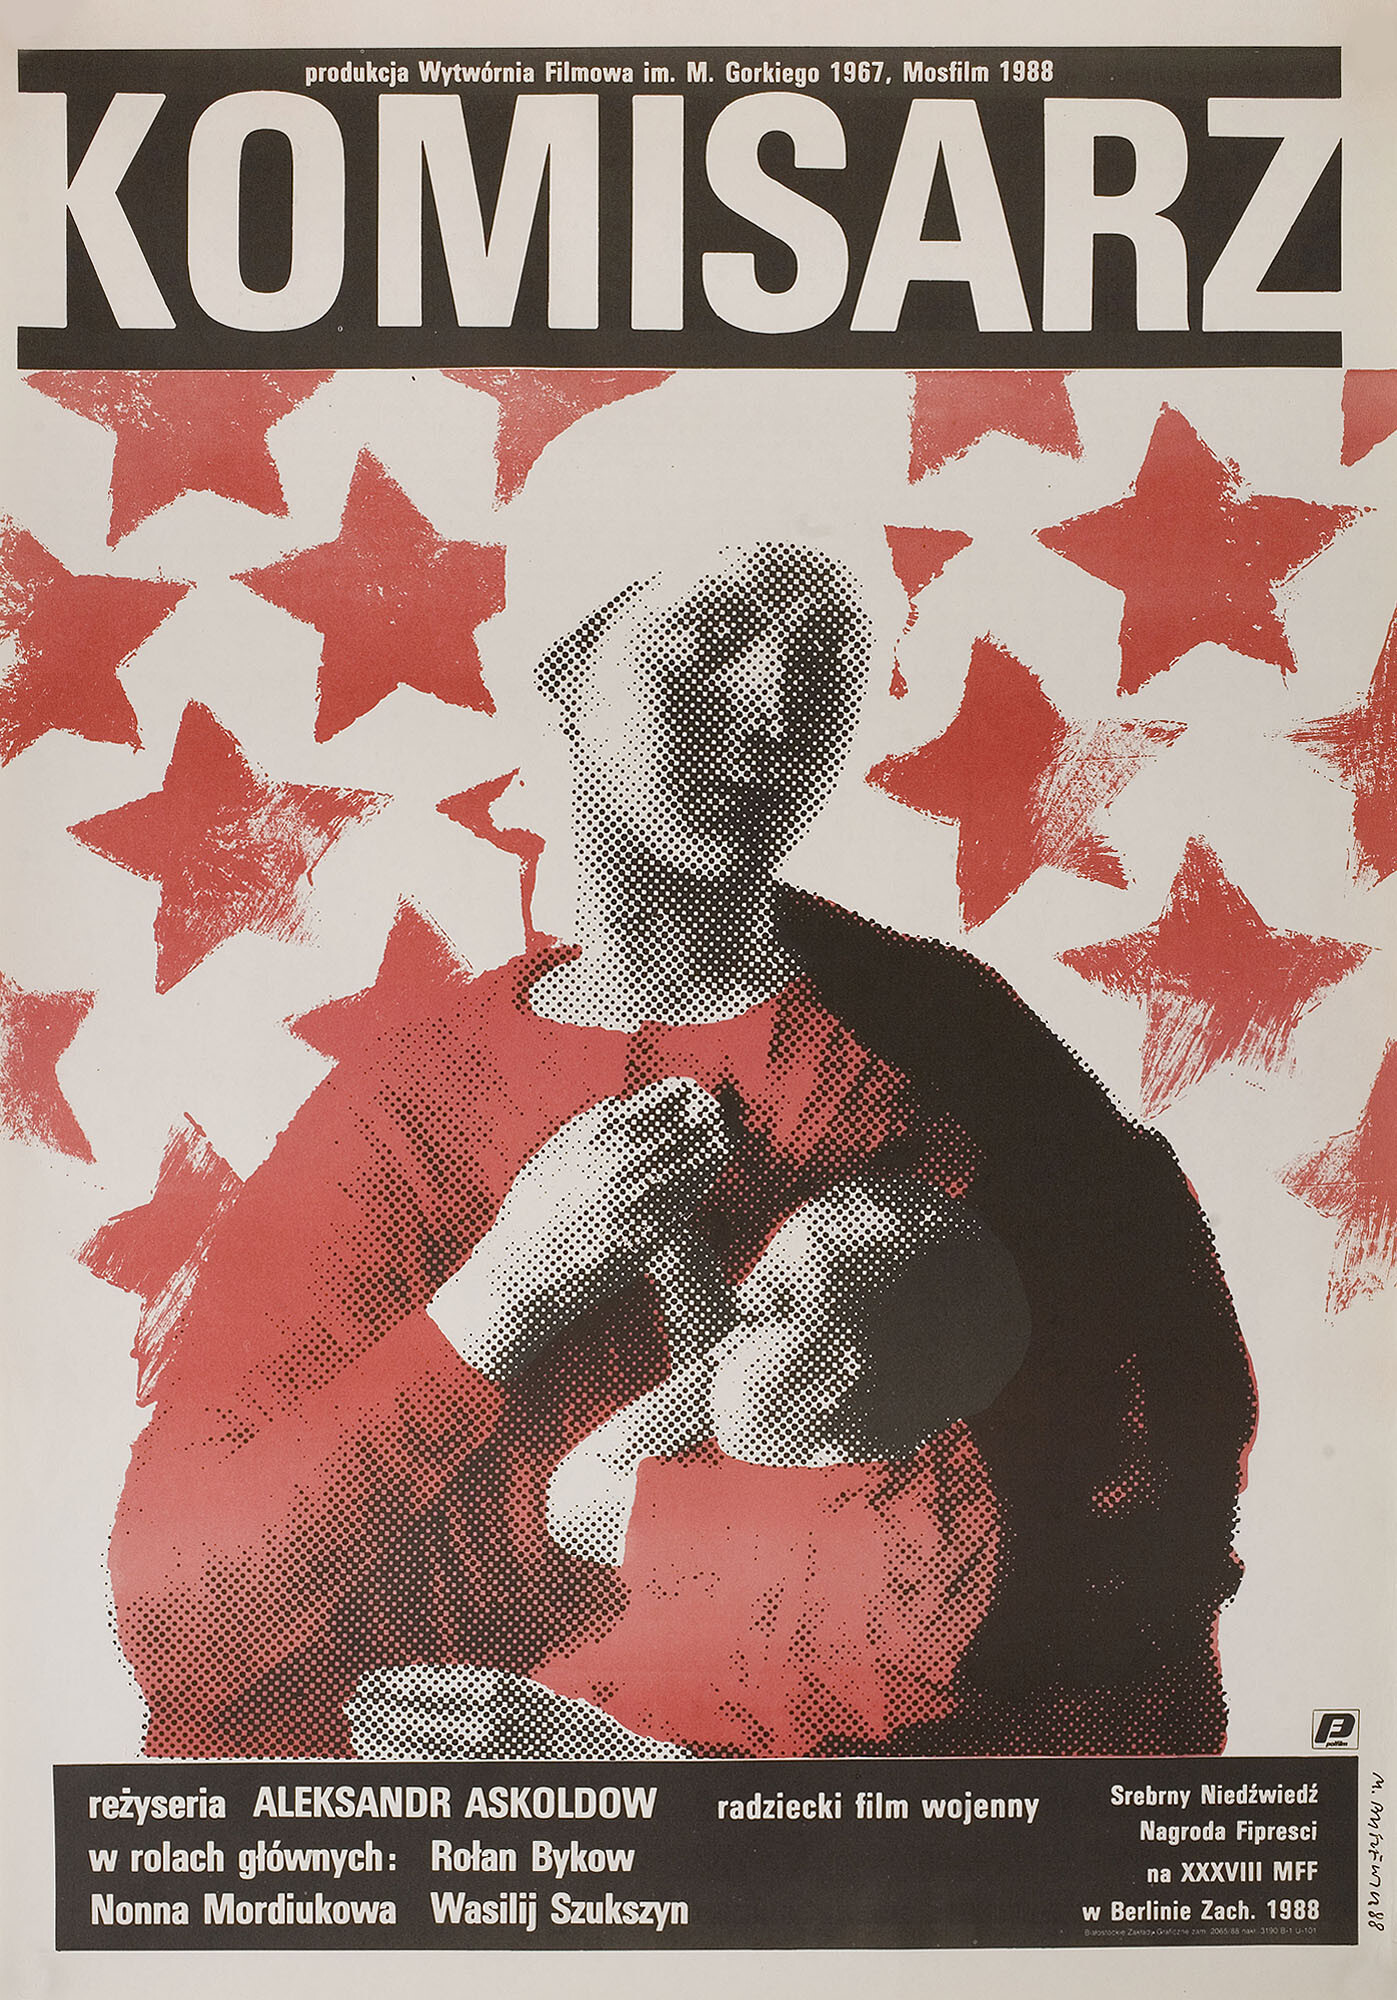 Комиссар (режиссёр Александр Аскольдов, 1967), польский постер к фильму, автор Мацей Бушевич, 1988 год